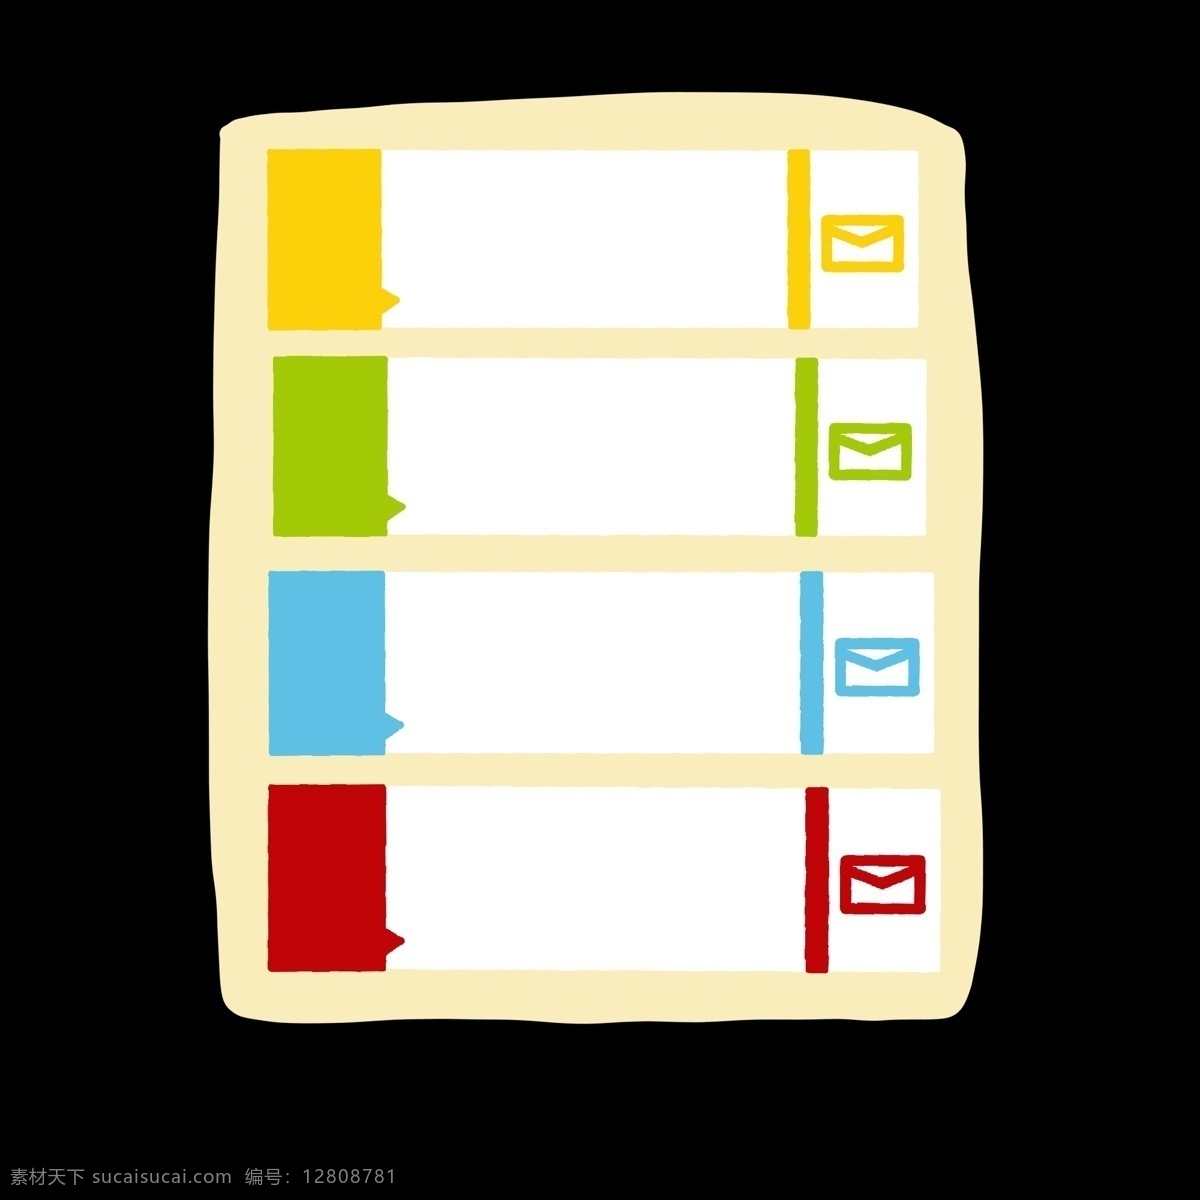 五颜六色 信封 样式 分类 表 信封样式 分别开 区分开 ppt专用 卡通 简约 简单 简洁 分解图 分化表